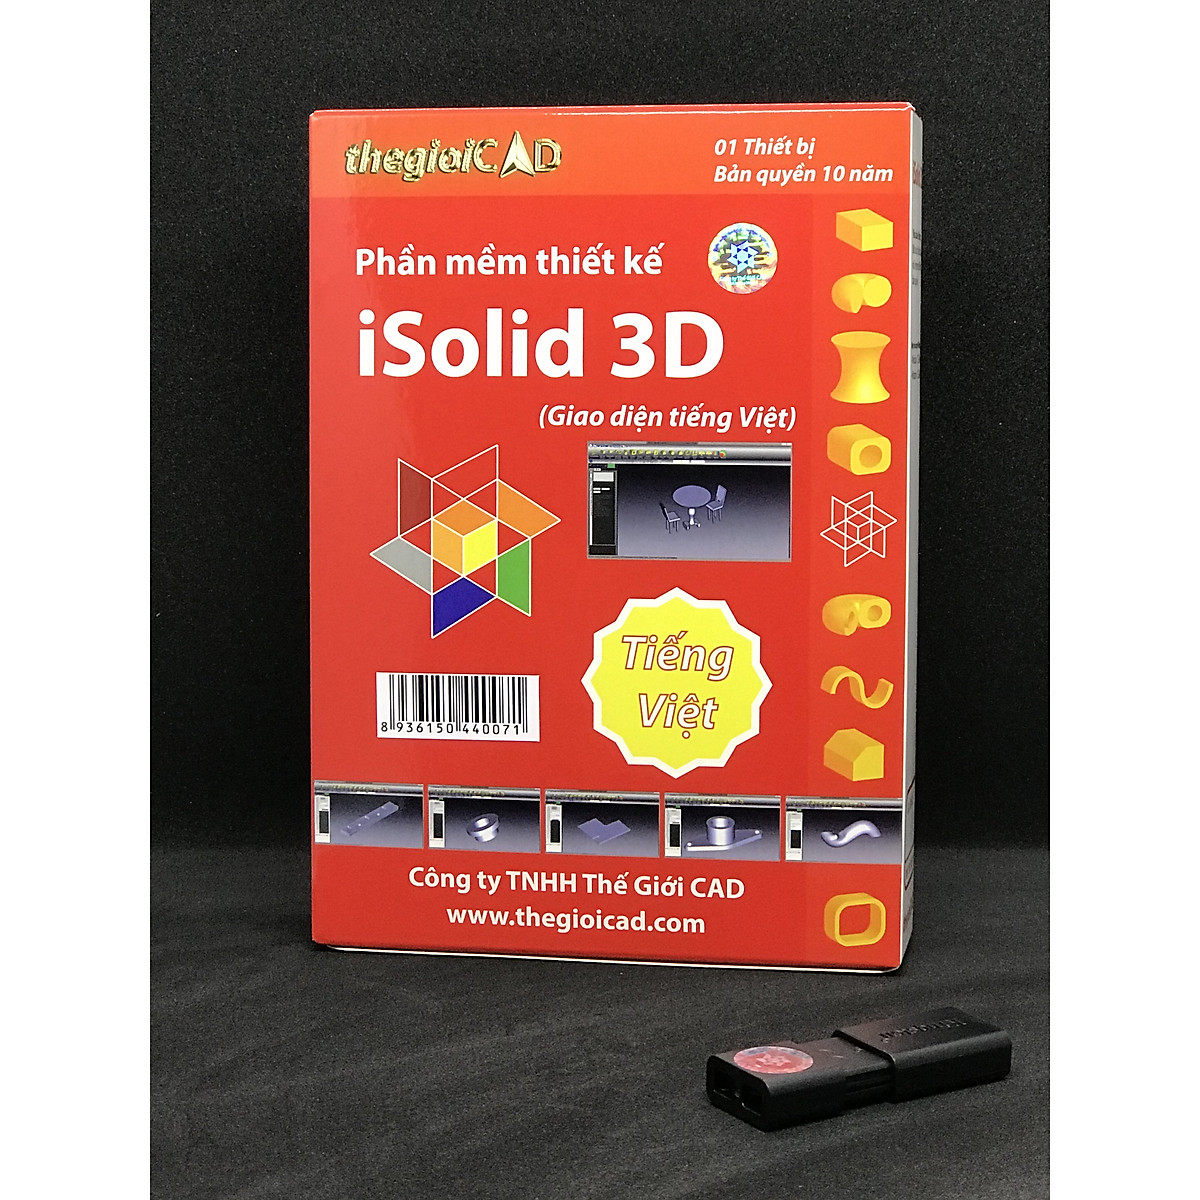 Dòng sản phẩm iSolid 3D của chúng tôi sẽ khiến bạn mãn nhãn với các hình ảnh 3D đỉnh cao chân thực và sắc nét. Hãy đến với chúng tôi để khám phá thế giới ảo đầy kỳ diệu của iSolid 3D.